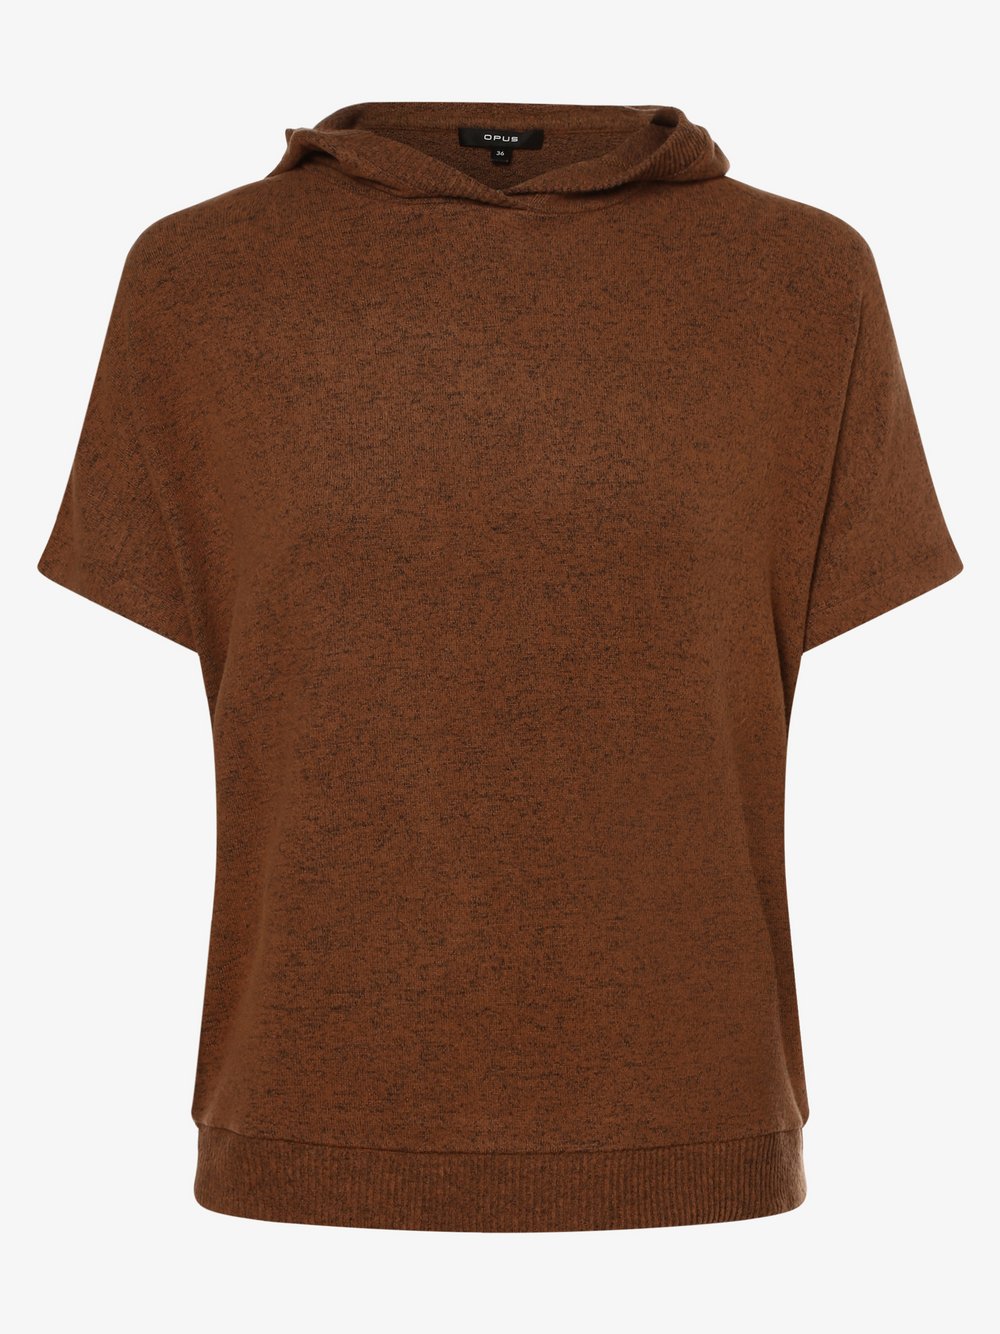 Opus - Koszulka damska – Gubine, brązowy